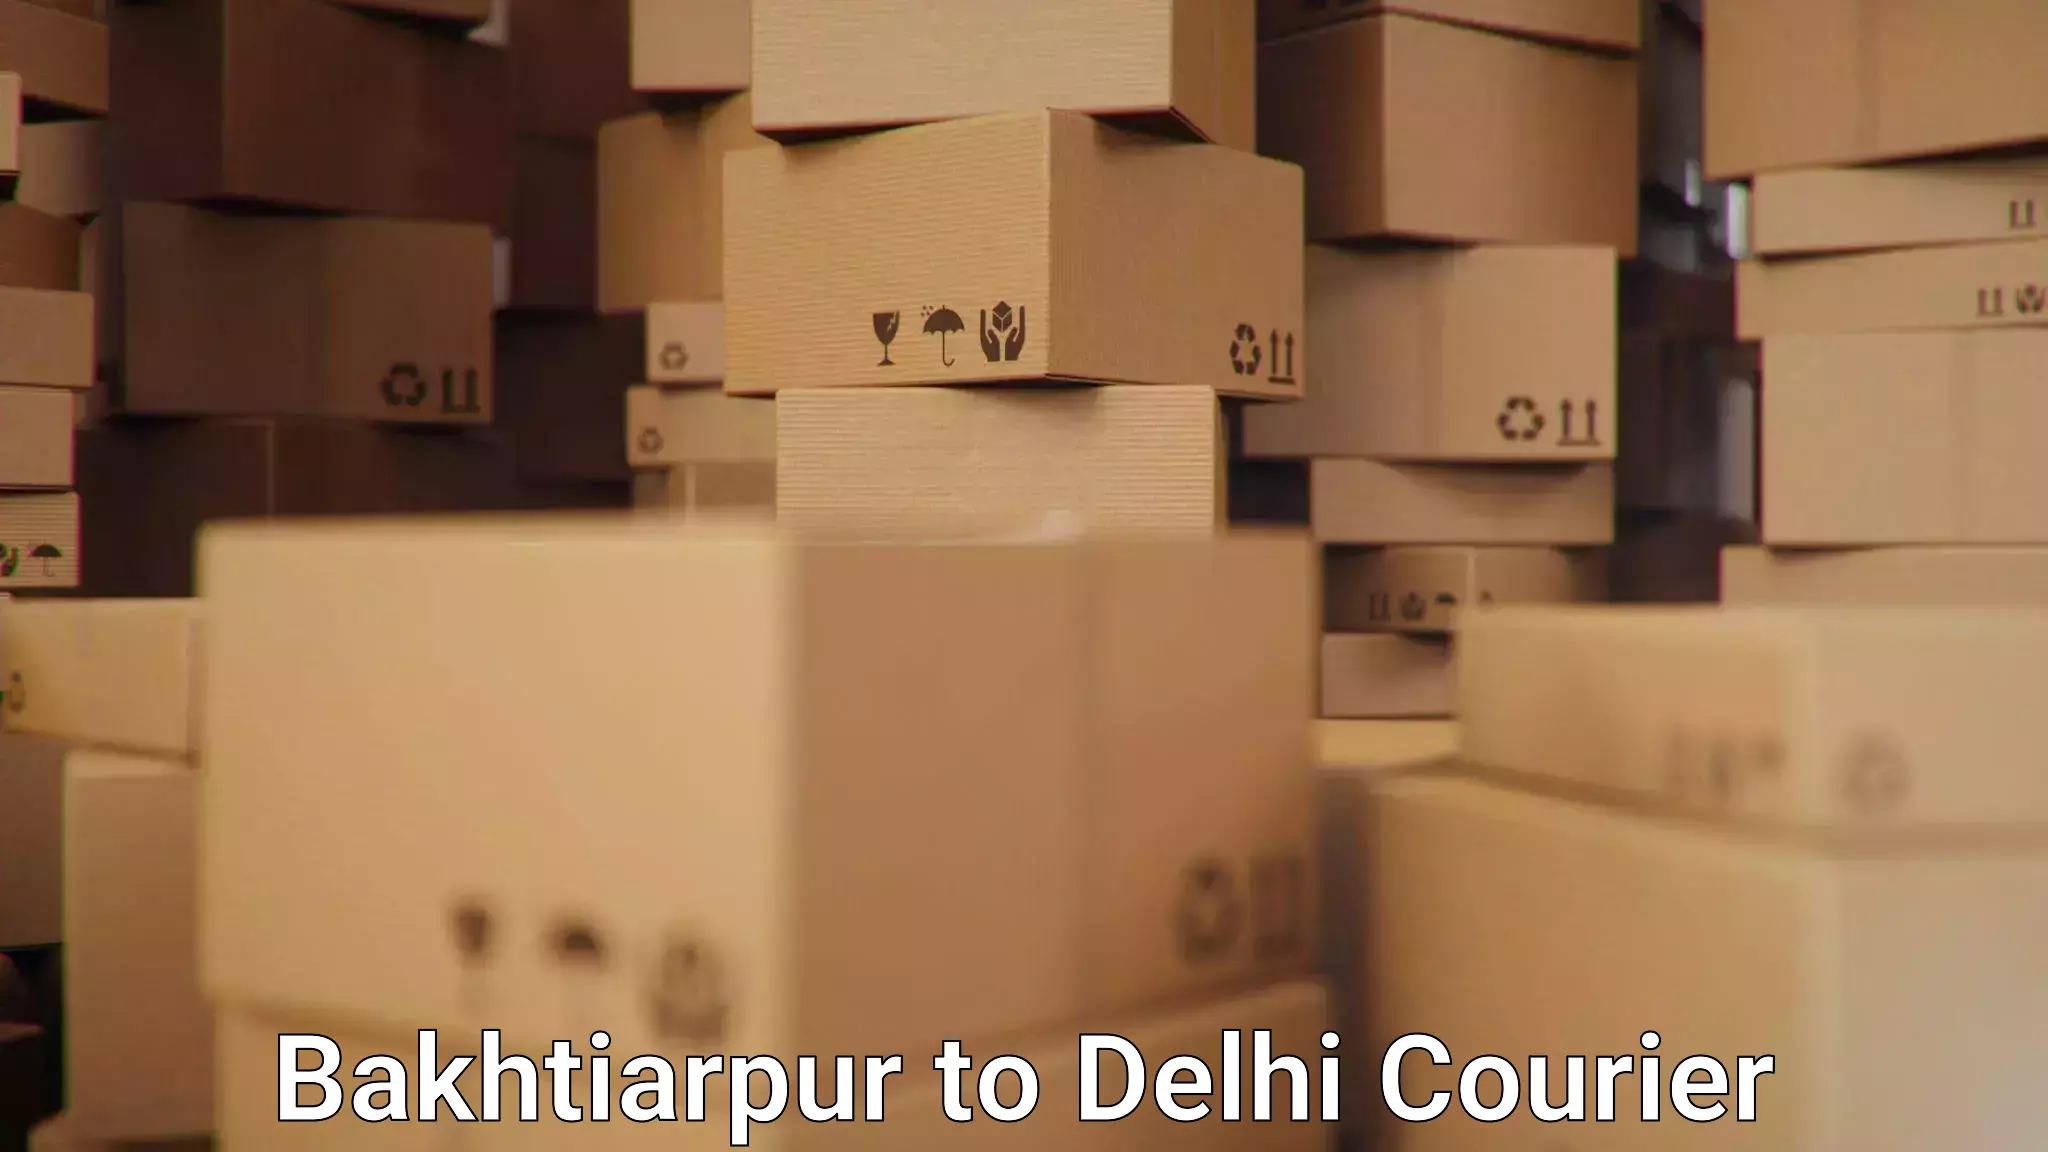 Customer-centric shipping Bakhtiarpur to East Delhi